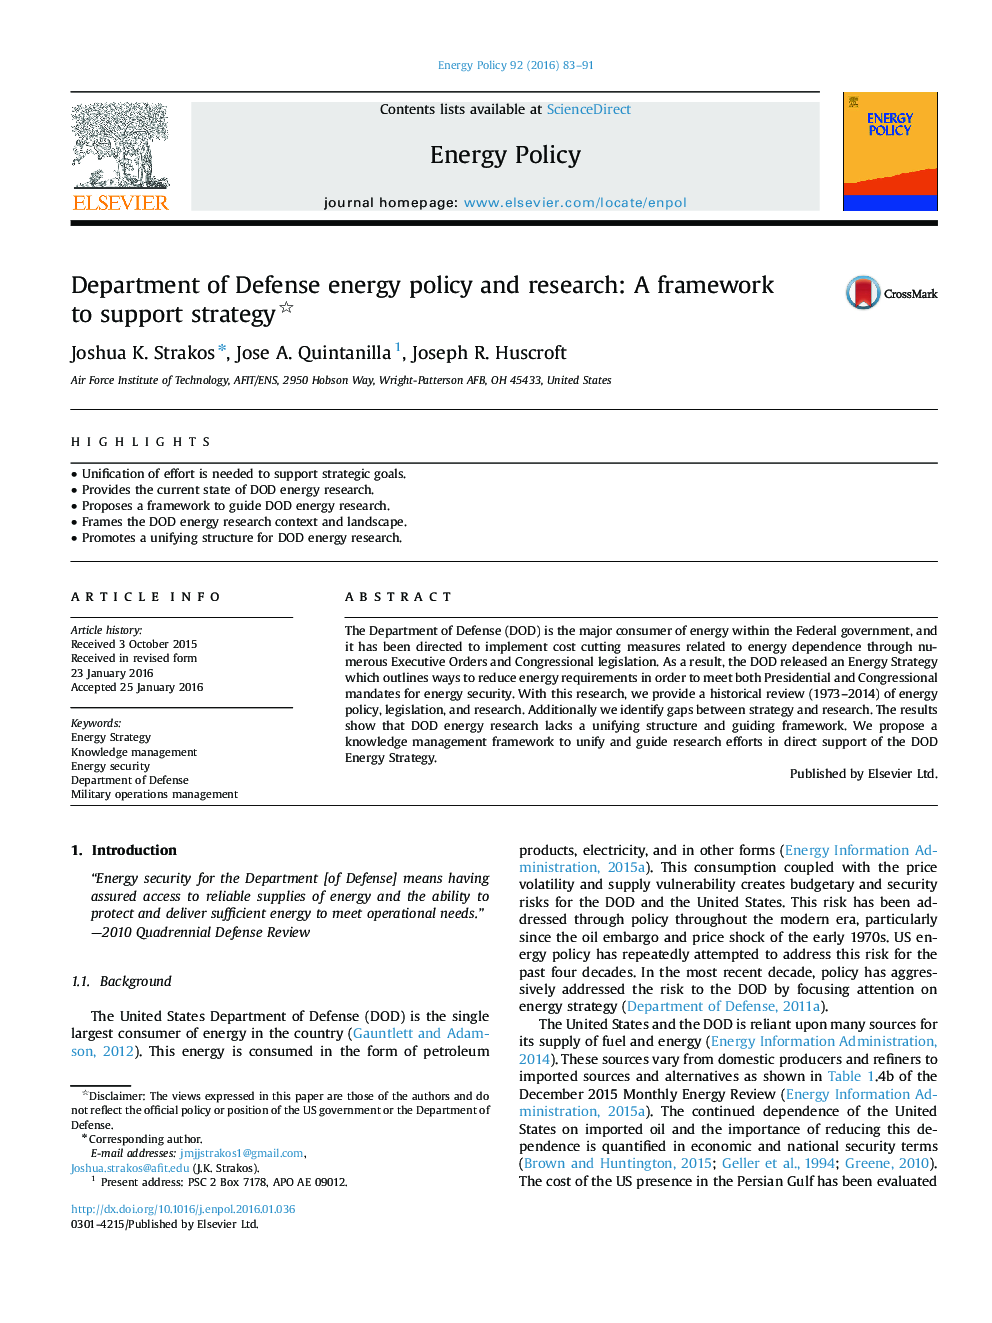 وزارت دفاع و سیاست انرژی: چارچوبی برای حمایت از استراتژی 